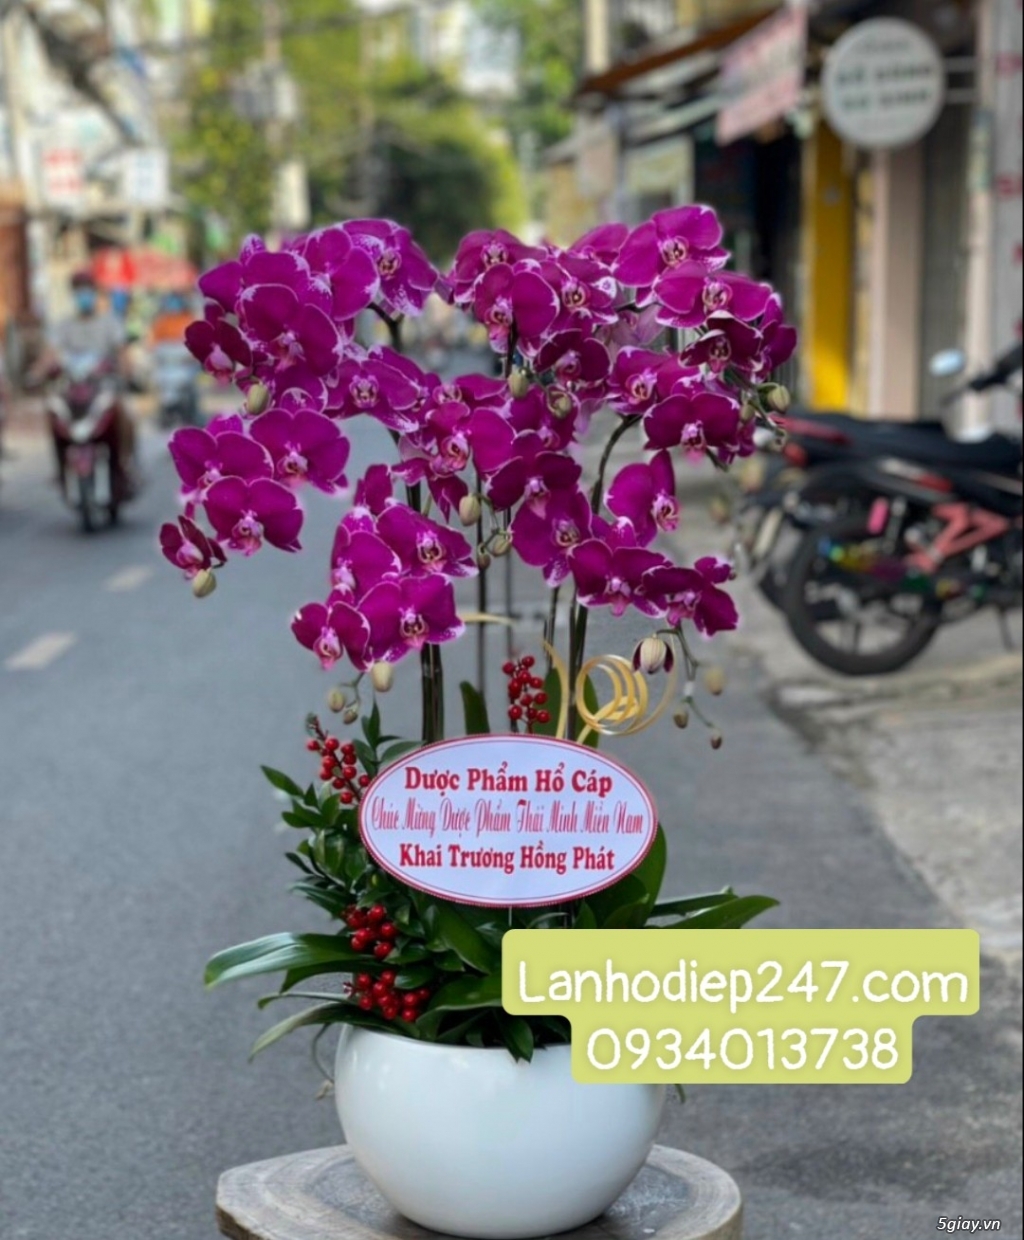 Hoa Tươi 247 Sài Gòn là dịch vụ hoa tươi số 1 TPHCM chuyên Lan Hồ Điệp